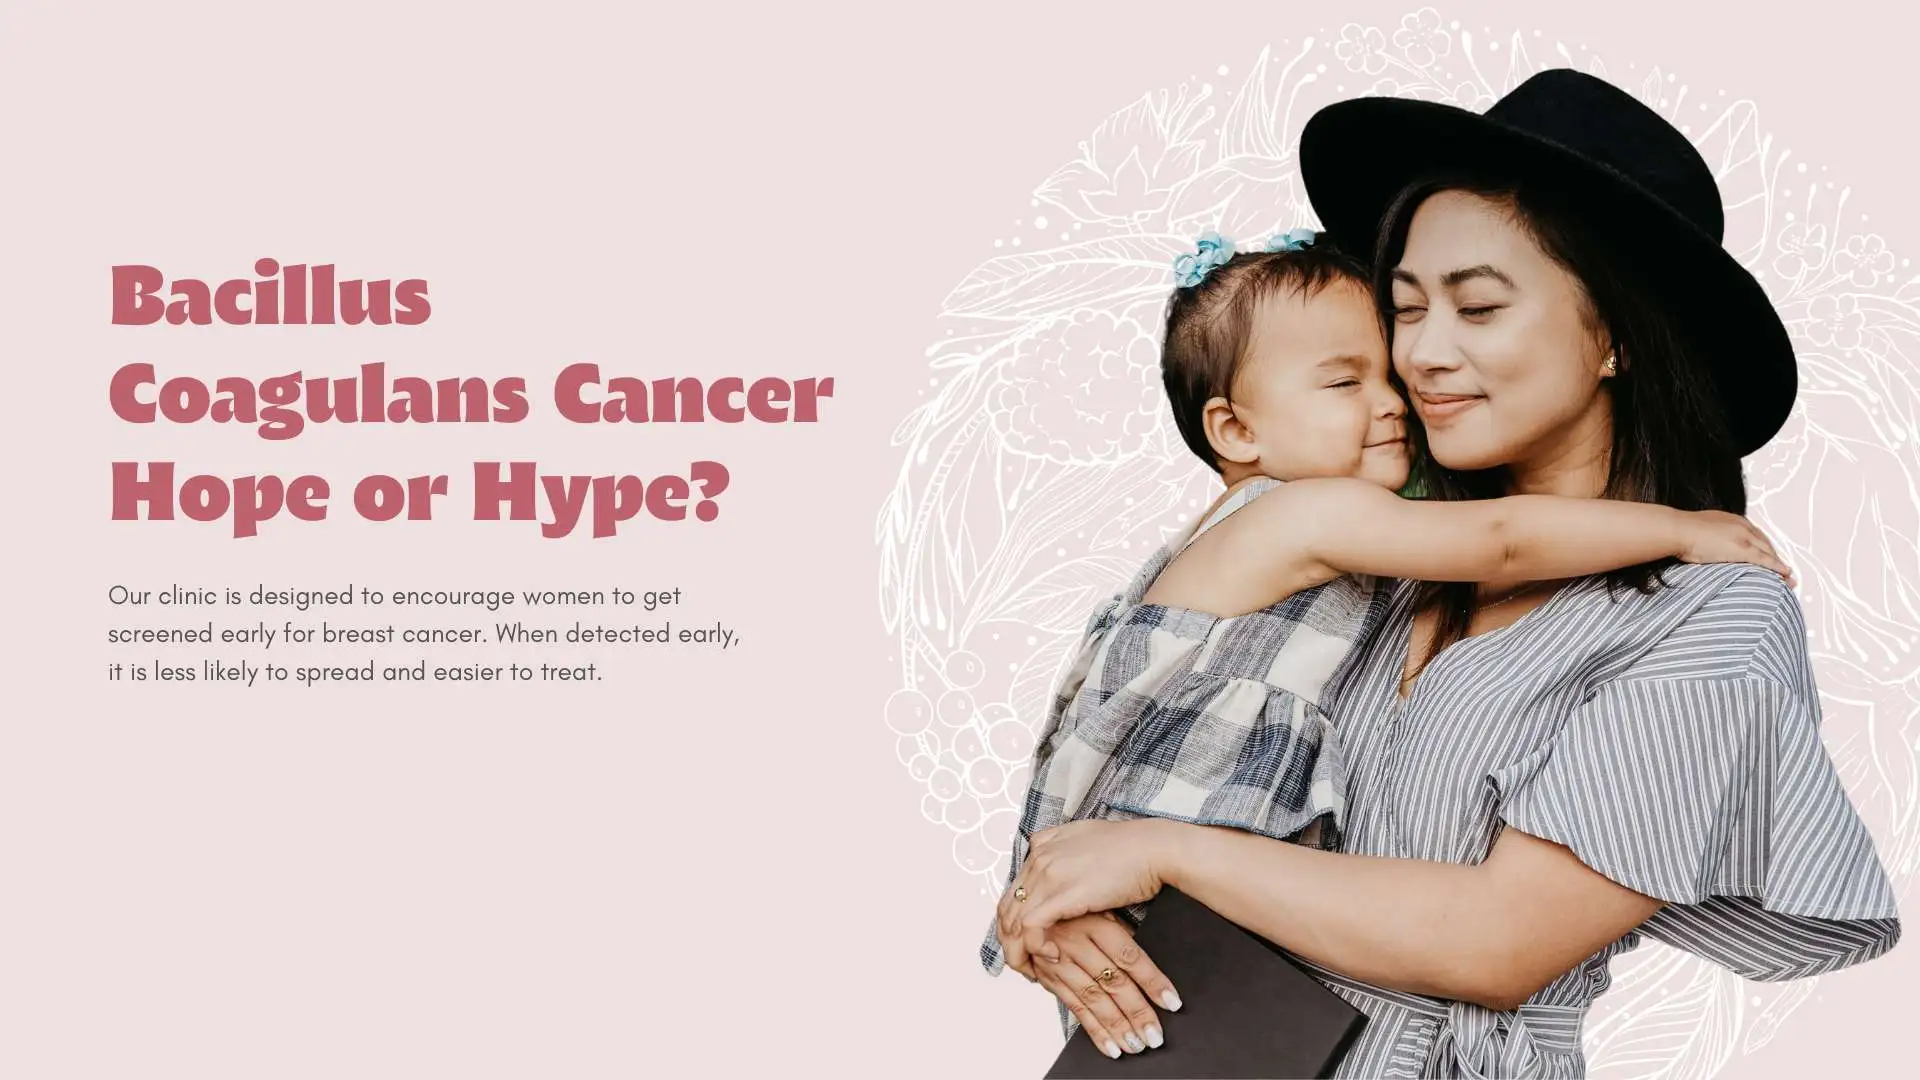 Bacillus Coagulans Cancer Hope or Hype?